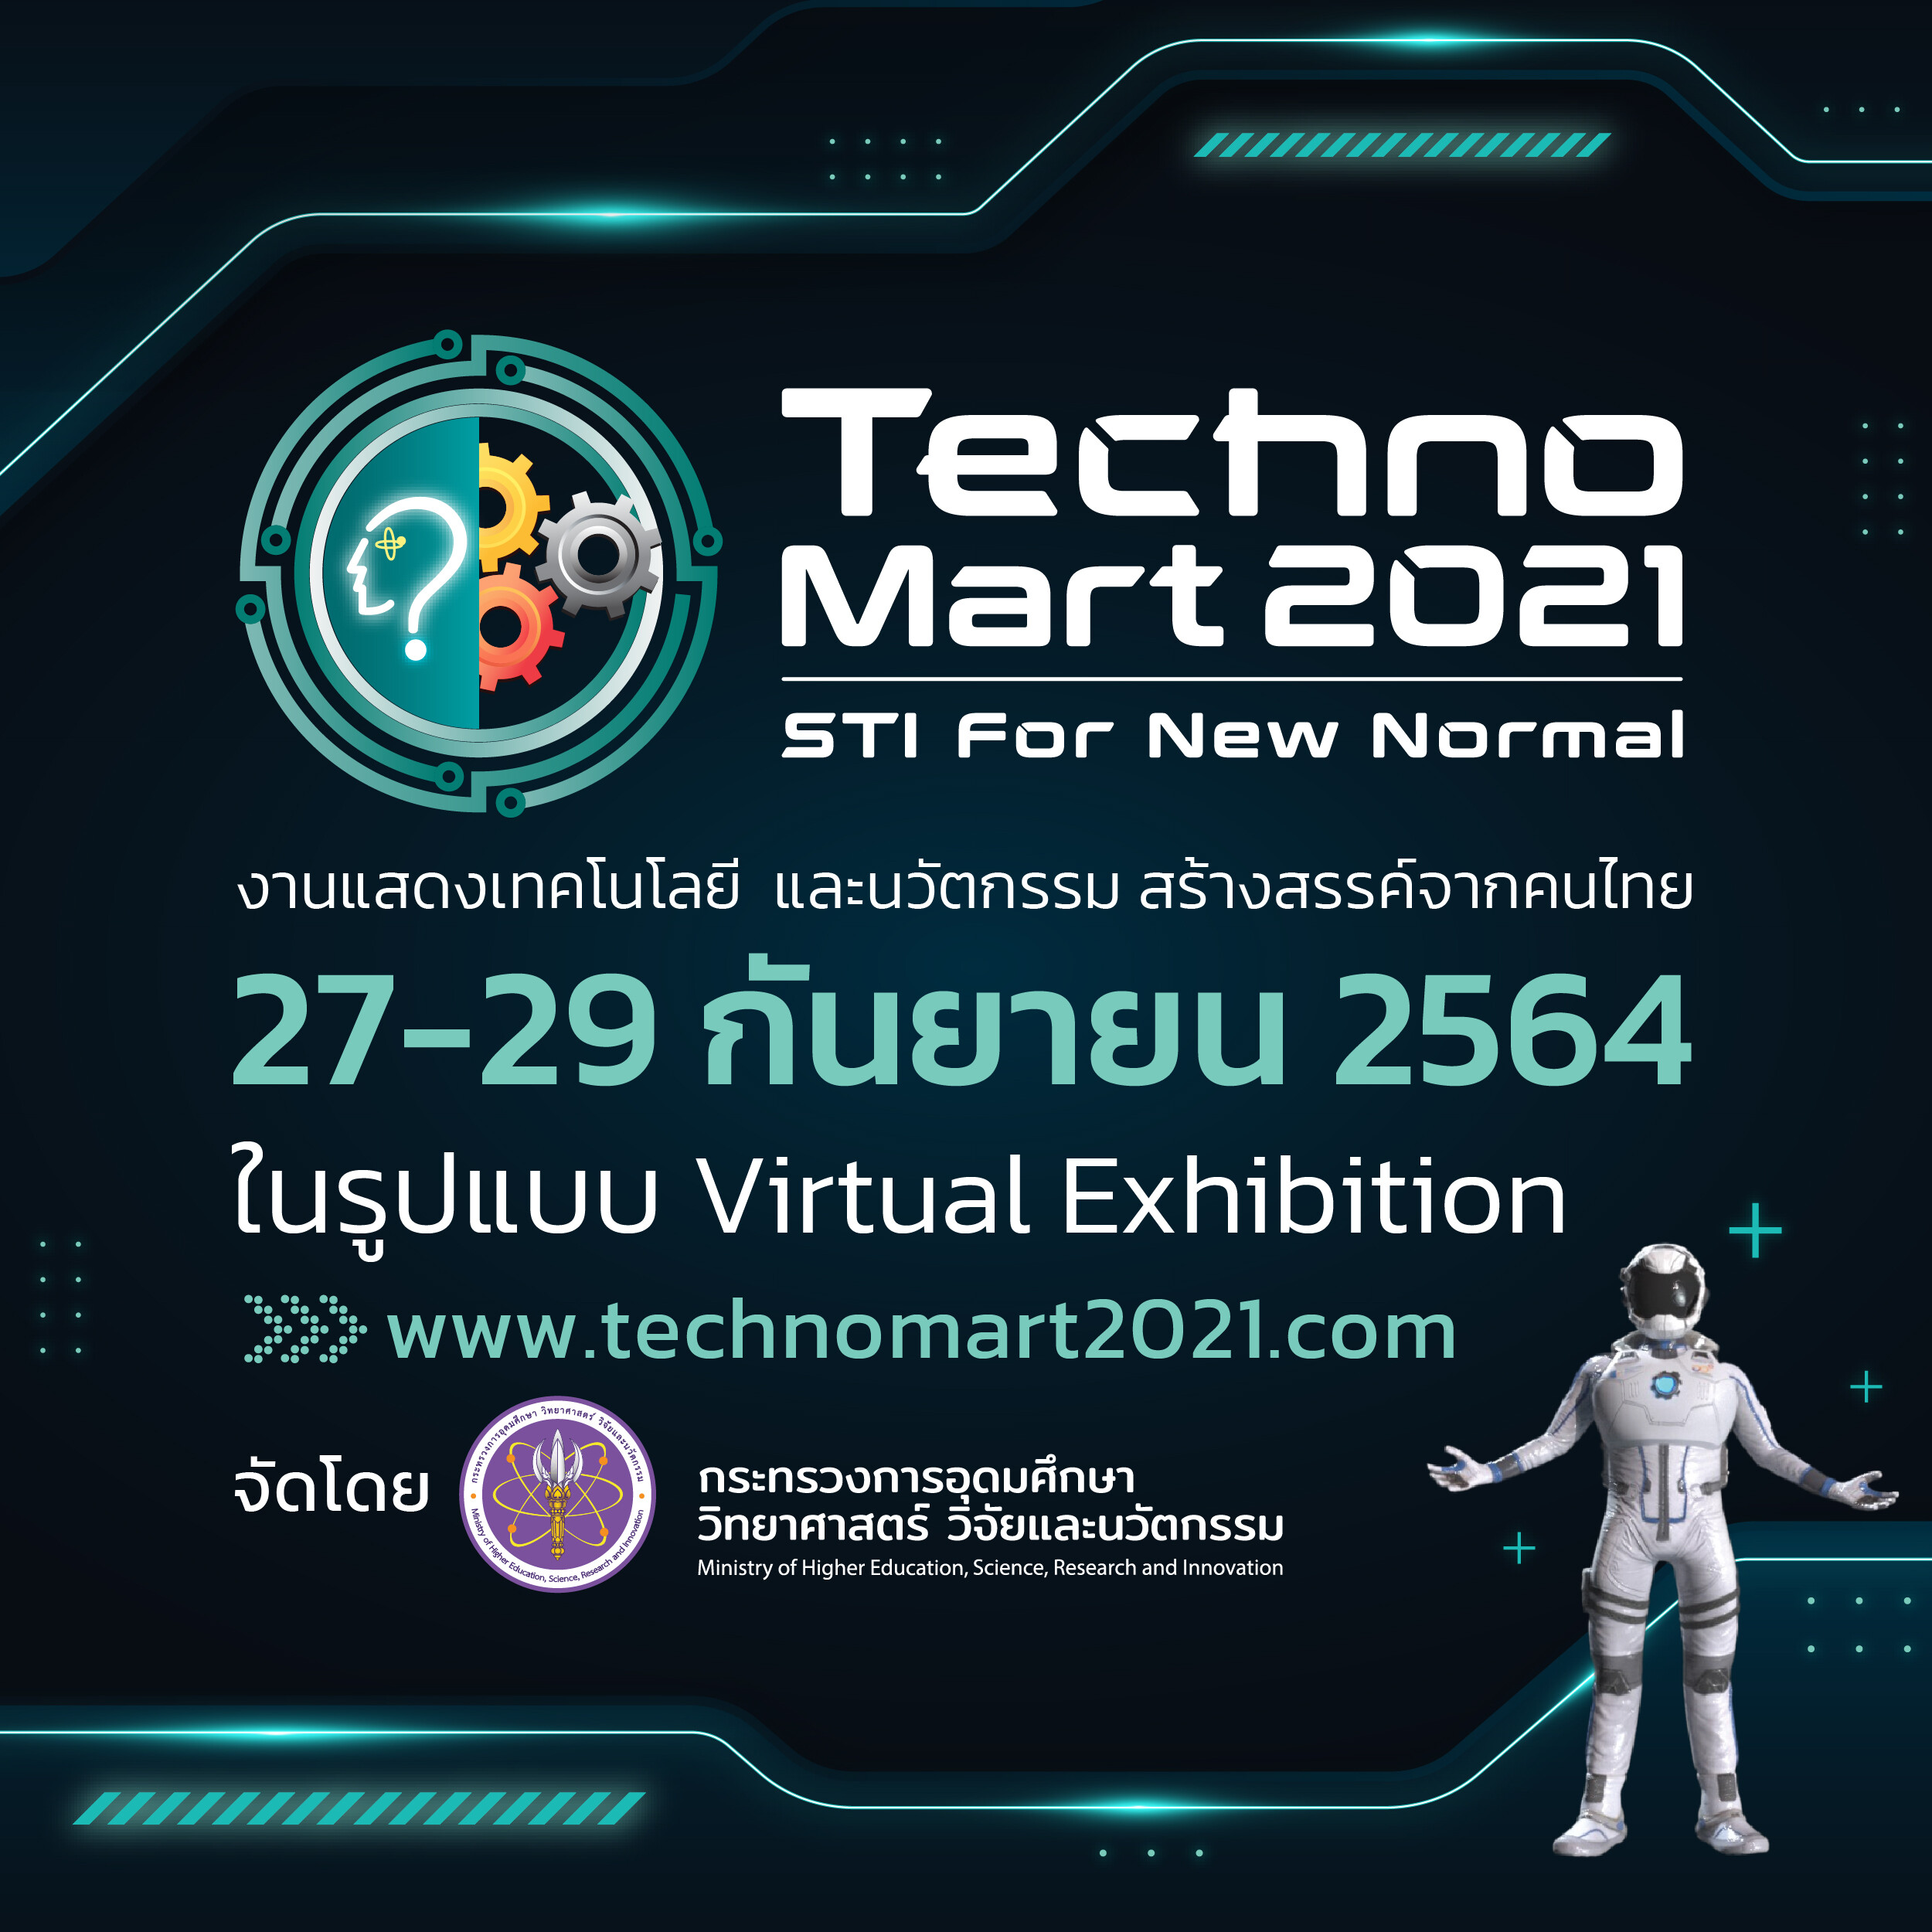 อว. ขอเชิญเข้าร่วมชมศักยภาพเทคโนโลยี นวัตกรรมของคนไทยรับวิกฤตโควิด-19 ในงานเทคโนโลยีและนวัตกรรมของไทย ประจำปี 2564 ภายใต้แนวคิด SIT for New Normal ในรูปแบบ Virtual Exhibition ตลอด 24 ชม.